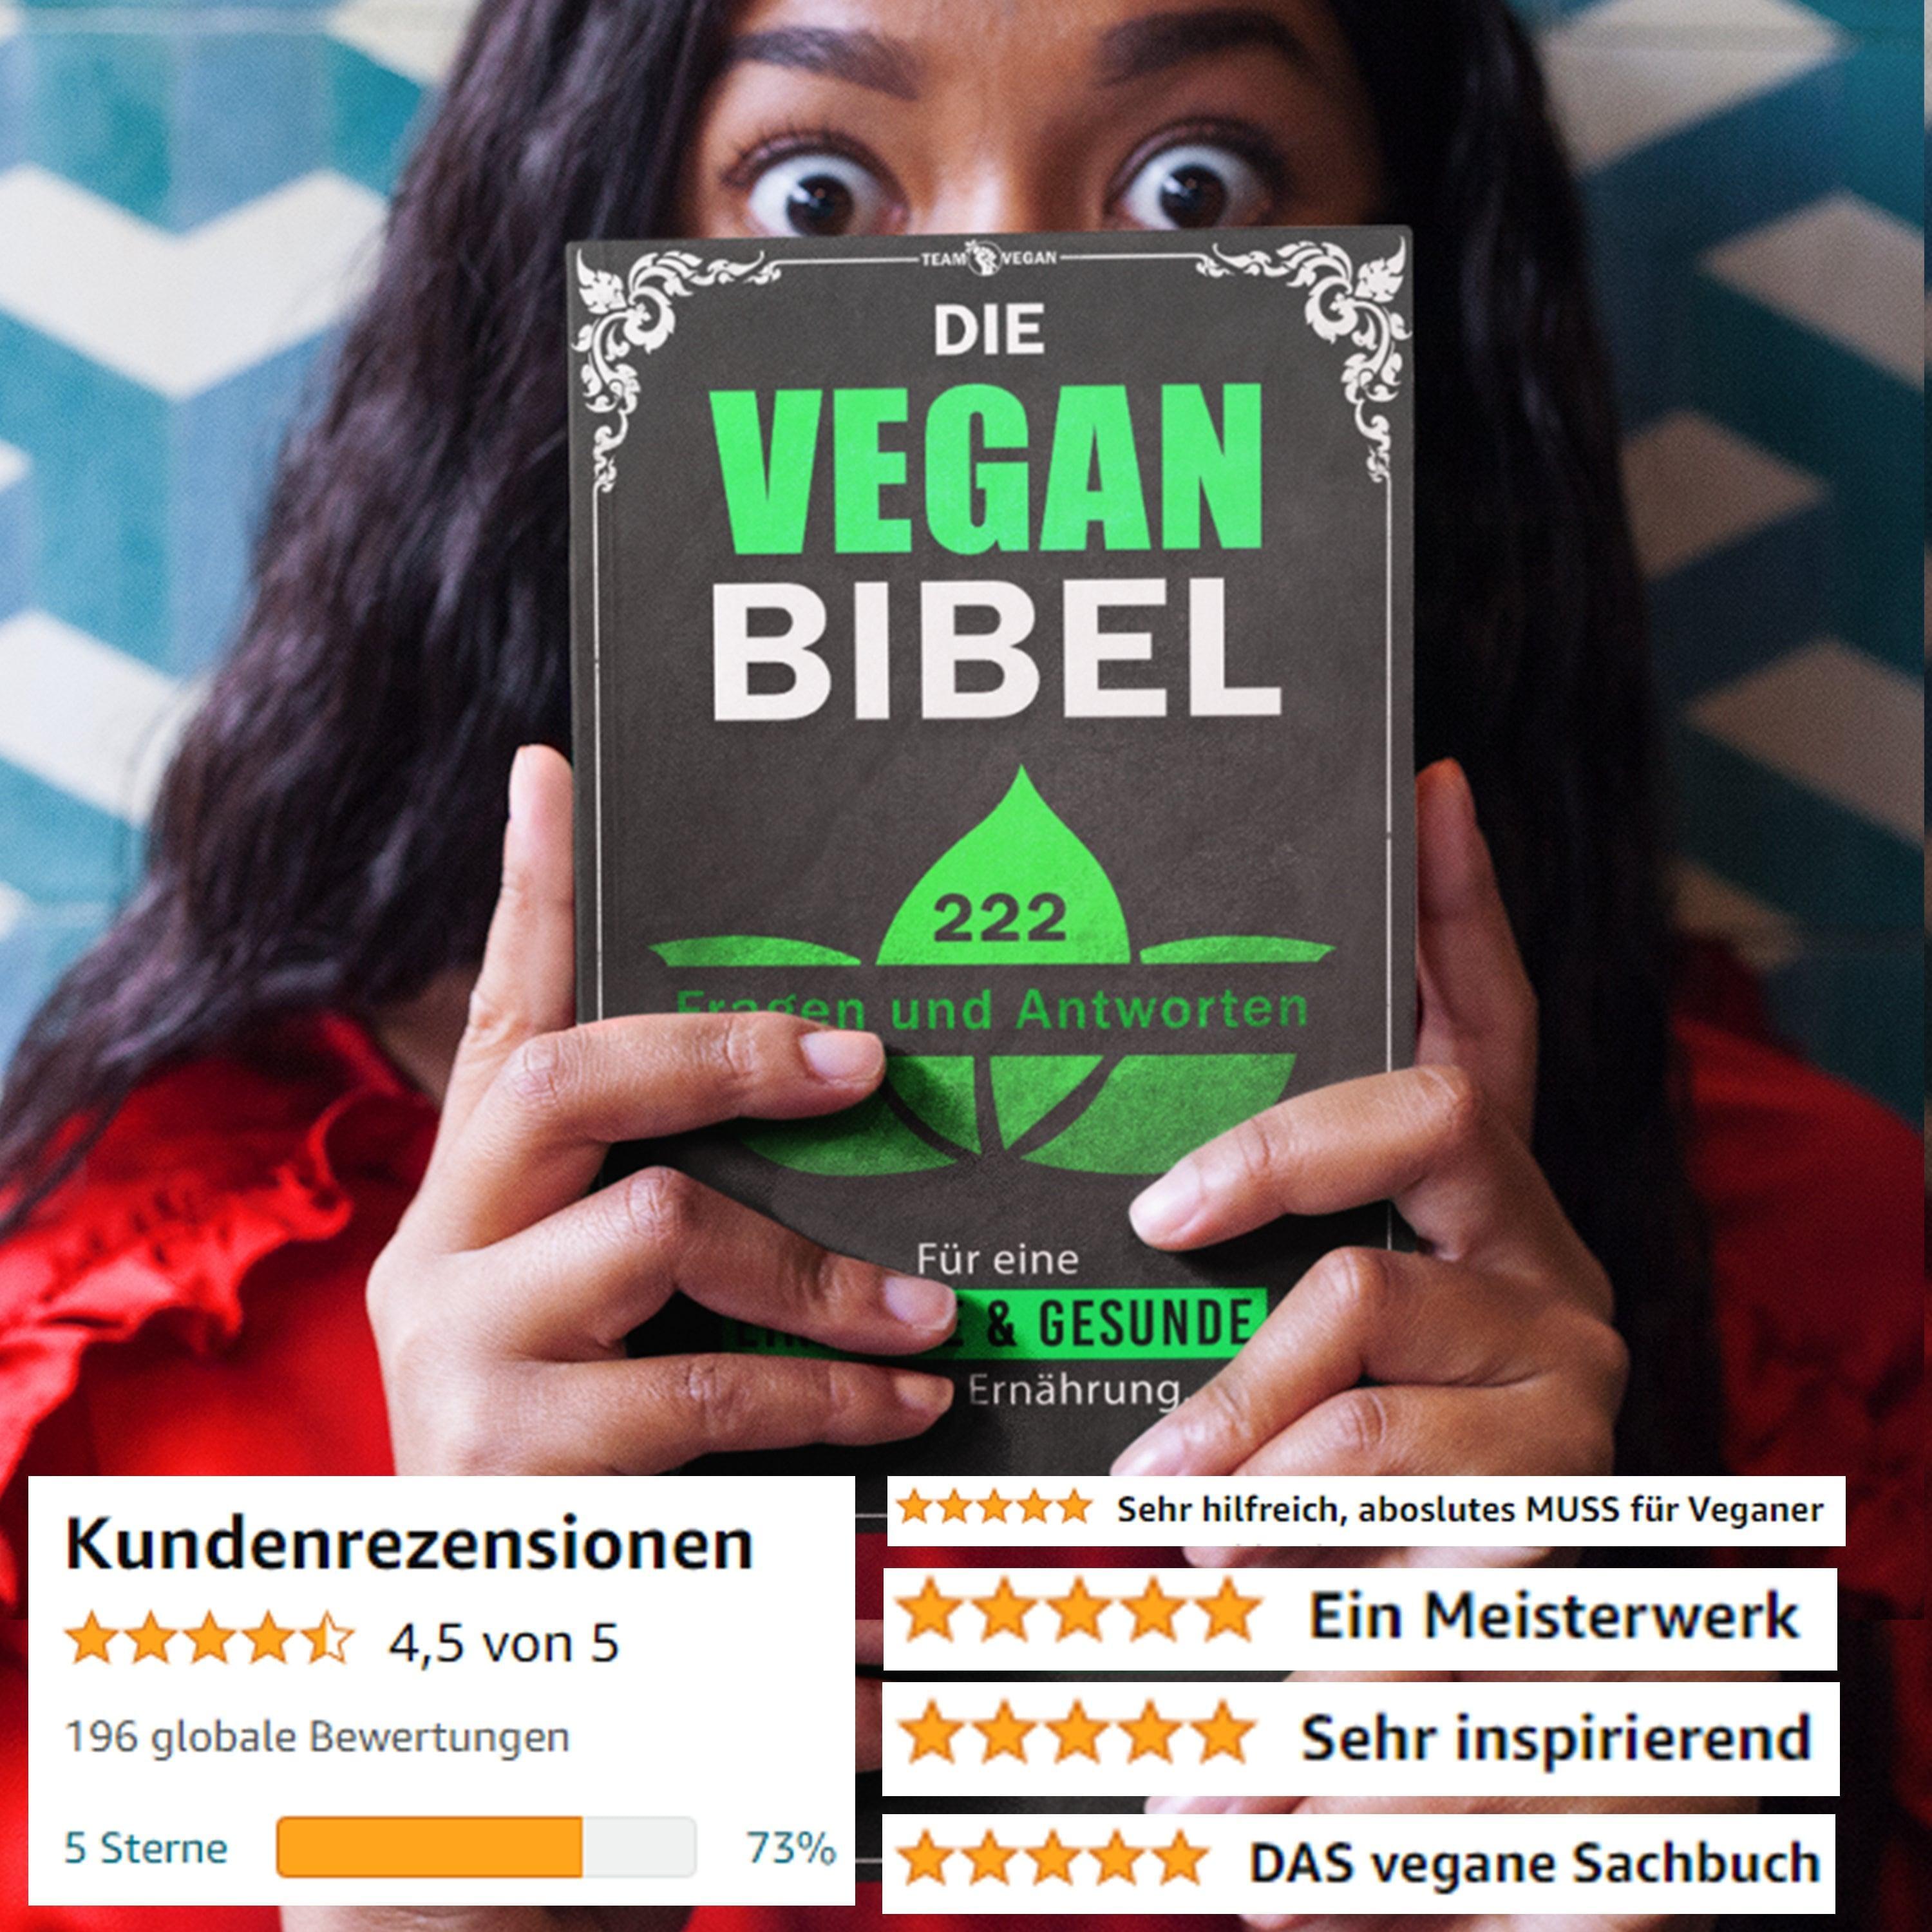 Die Vegan Bibel: 222 Fragen & Antworten für eine einfache & gesunde vegane Ernährung - Team Vegan © vegan t shirt